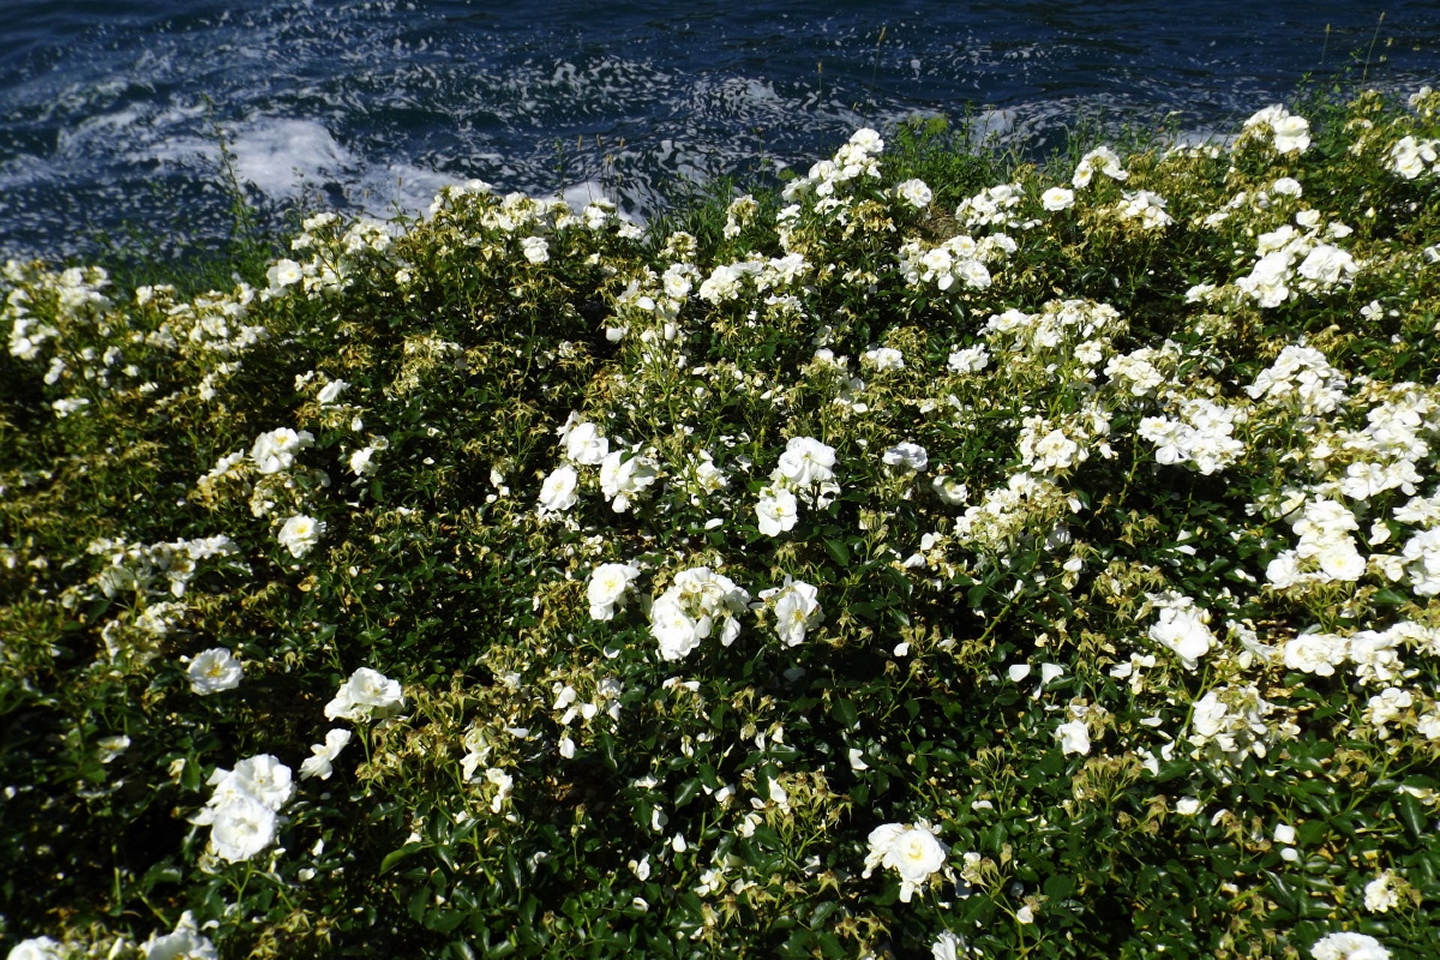 Weiße Rosen in - nein, nicht Athen, sondern Neuhausen am Rheinfall